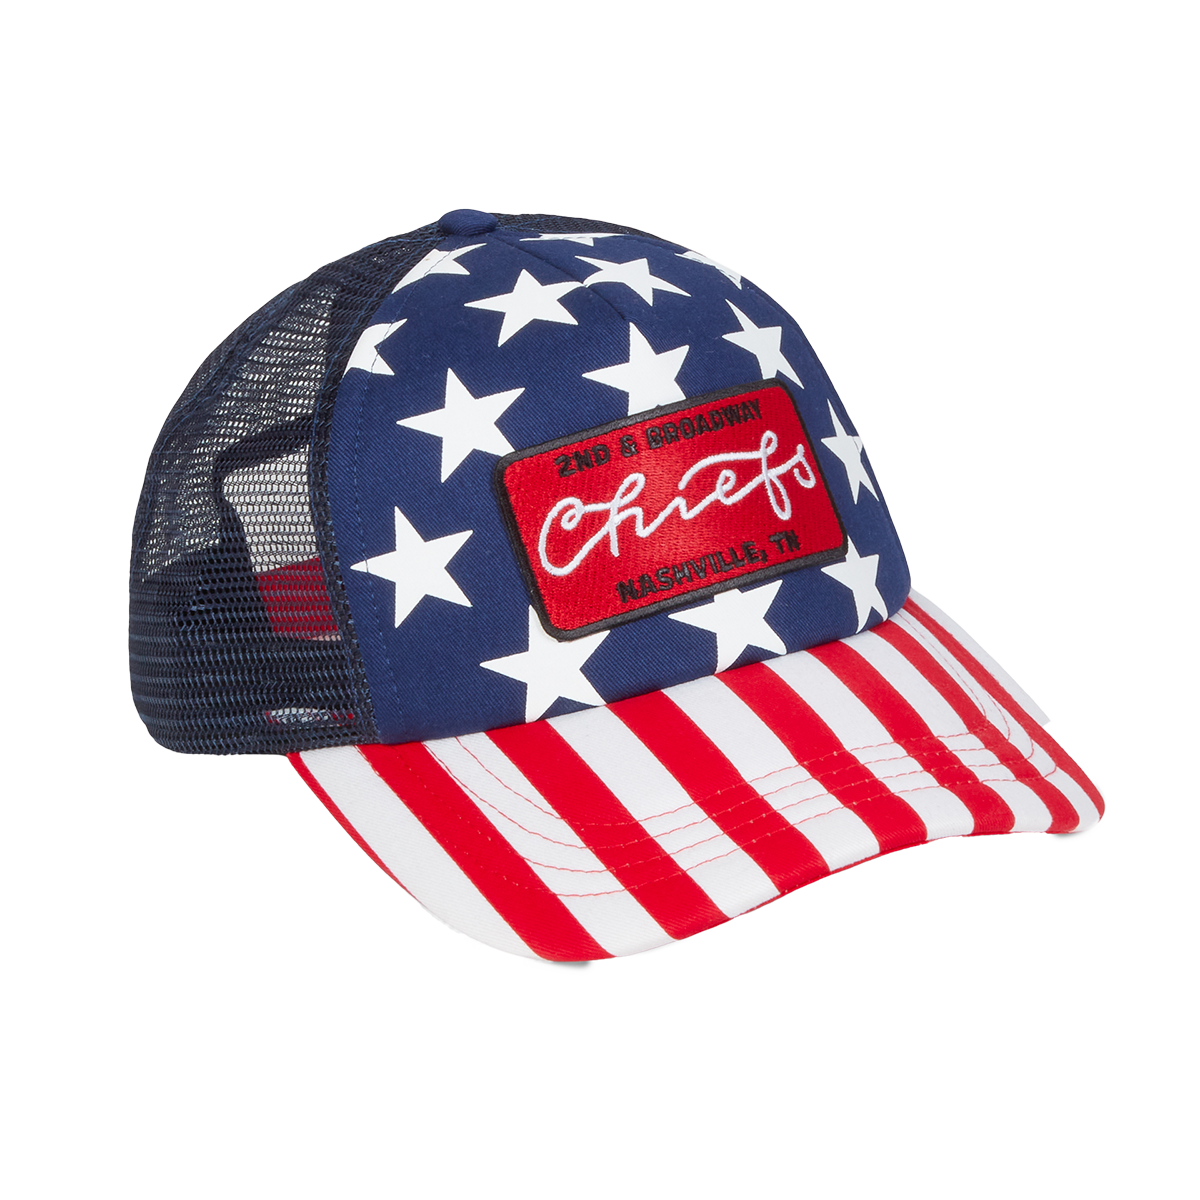 Chief's Stars & Stripes Hat